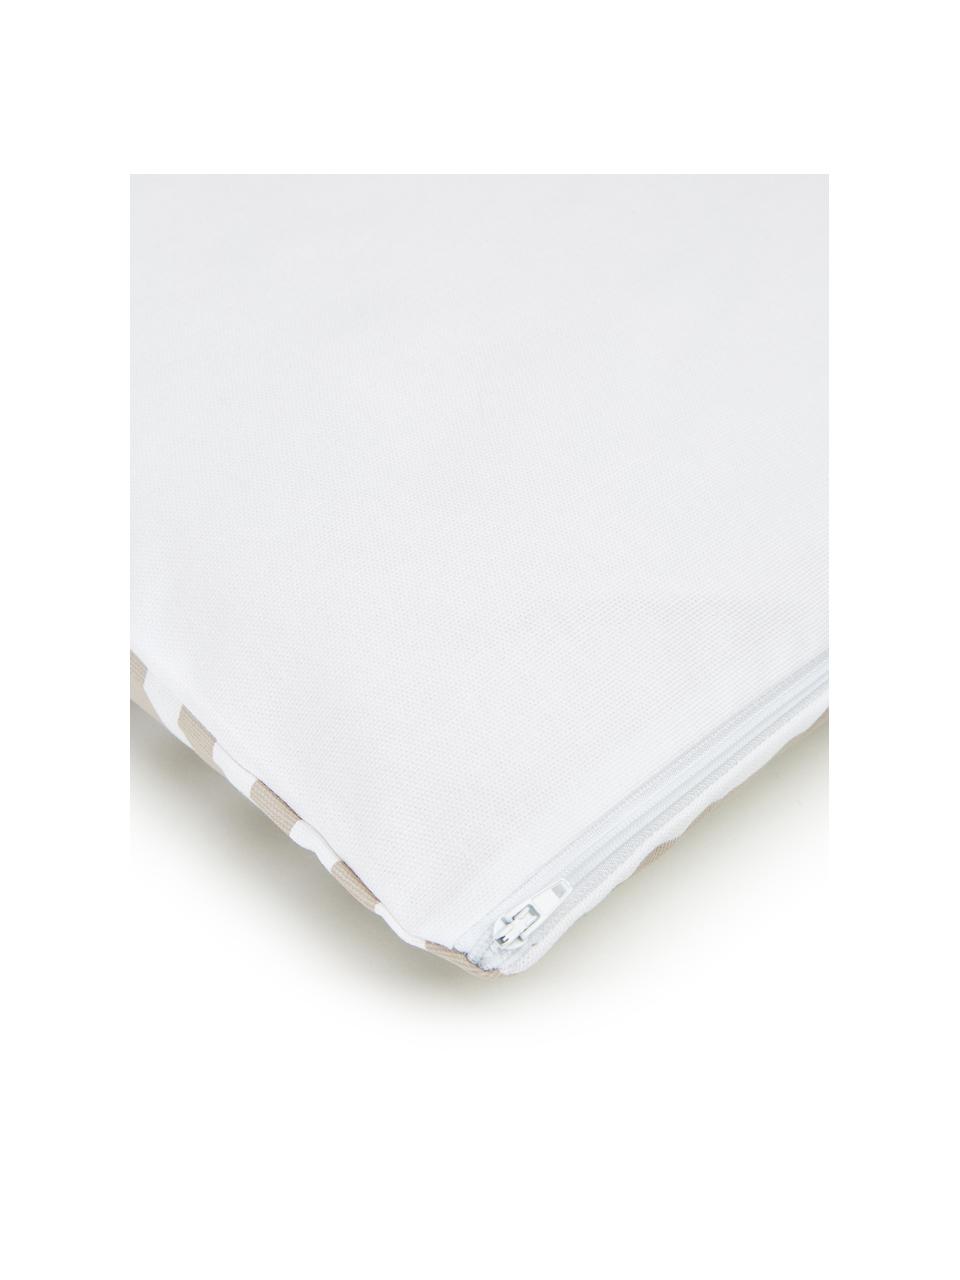 Kissenhülle Ivo Taupe/Weiss mit grafischem Muster, 100% Baumwolle, Weiss,Beige, 45 x 45 cm